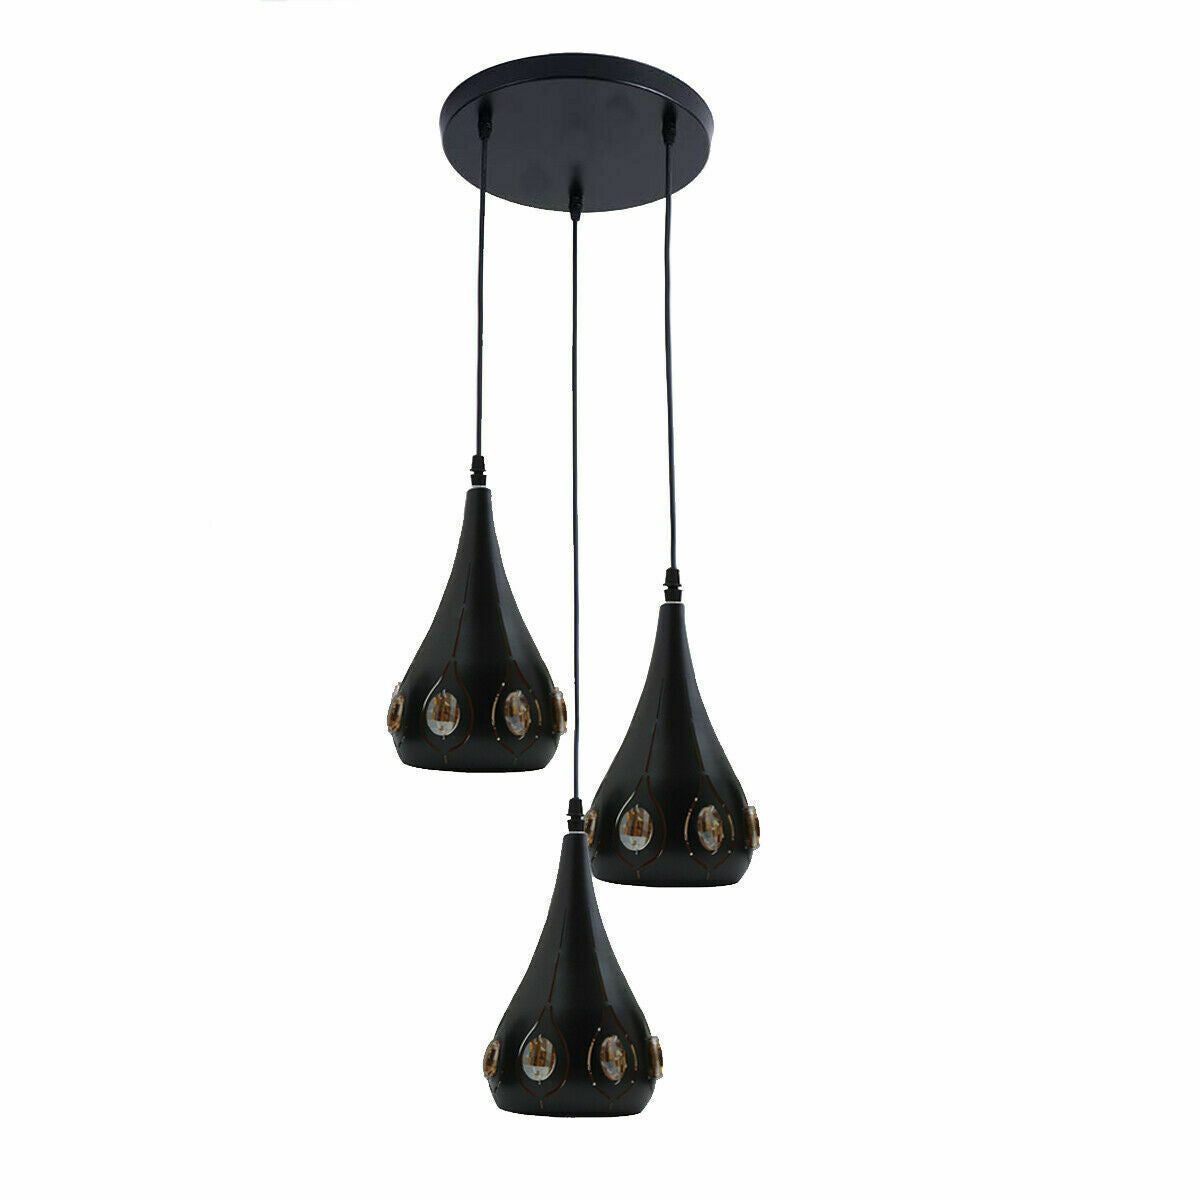 Vintage Industrial Ceiling Pendant Light Retro Loft Style Metal + Crystal Lamp~2167 - LEDSone UK Ltd